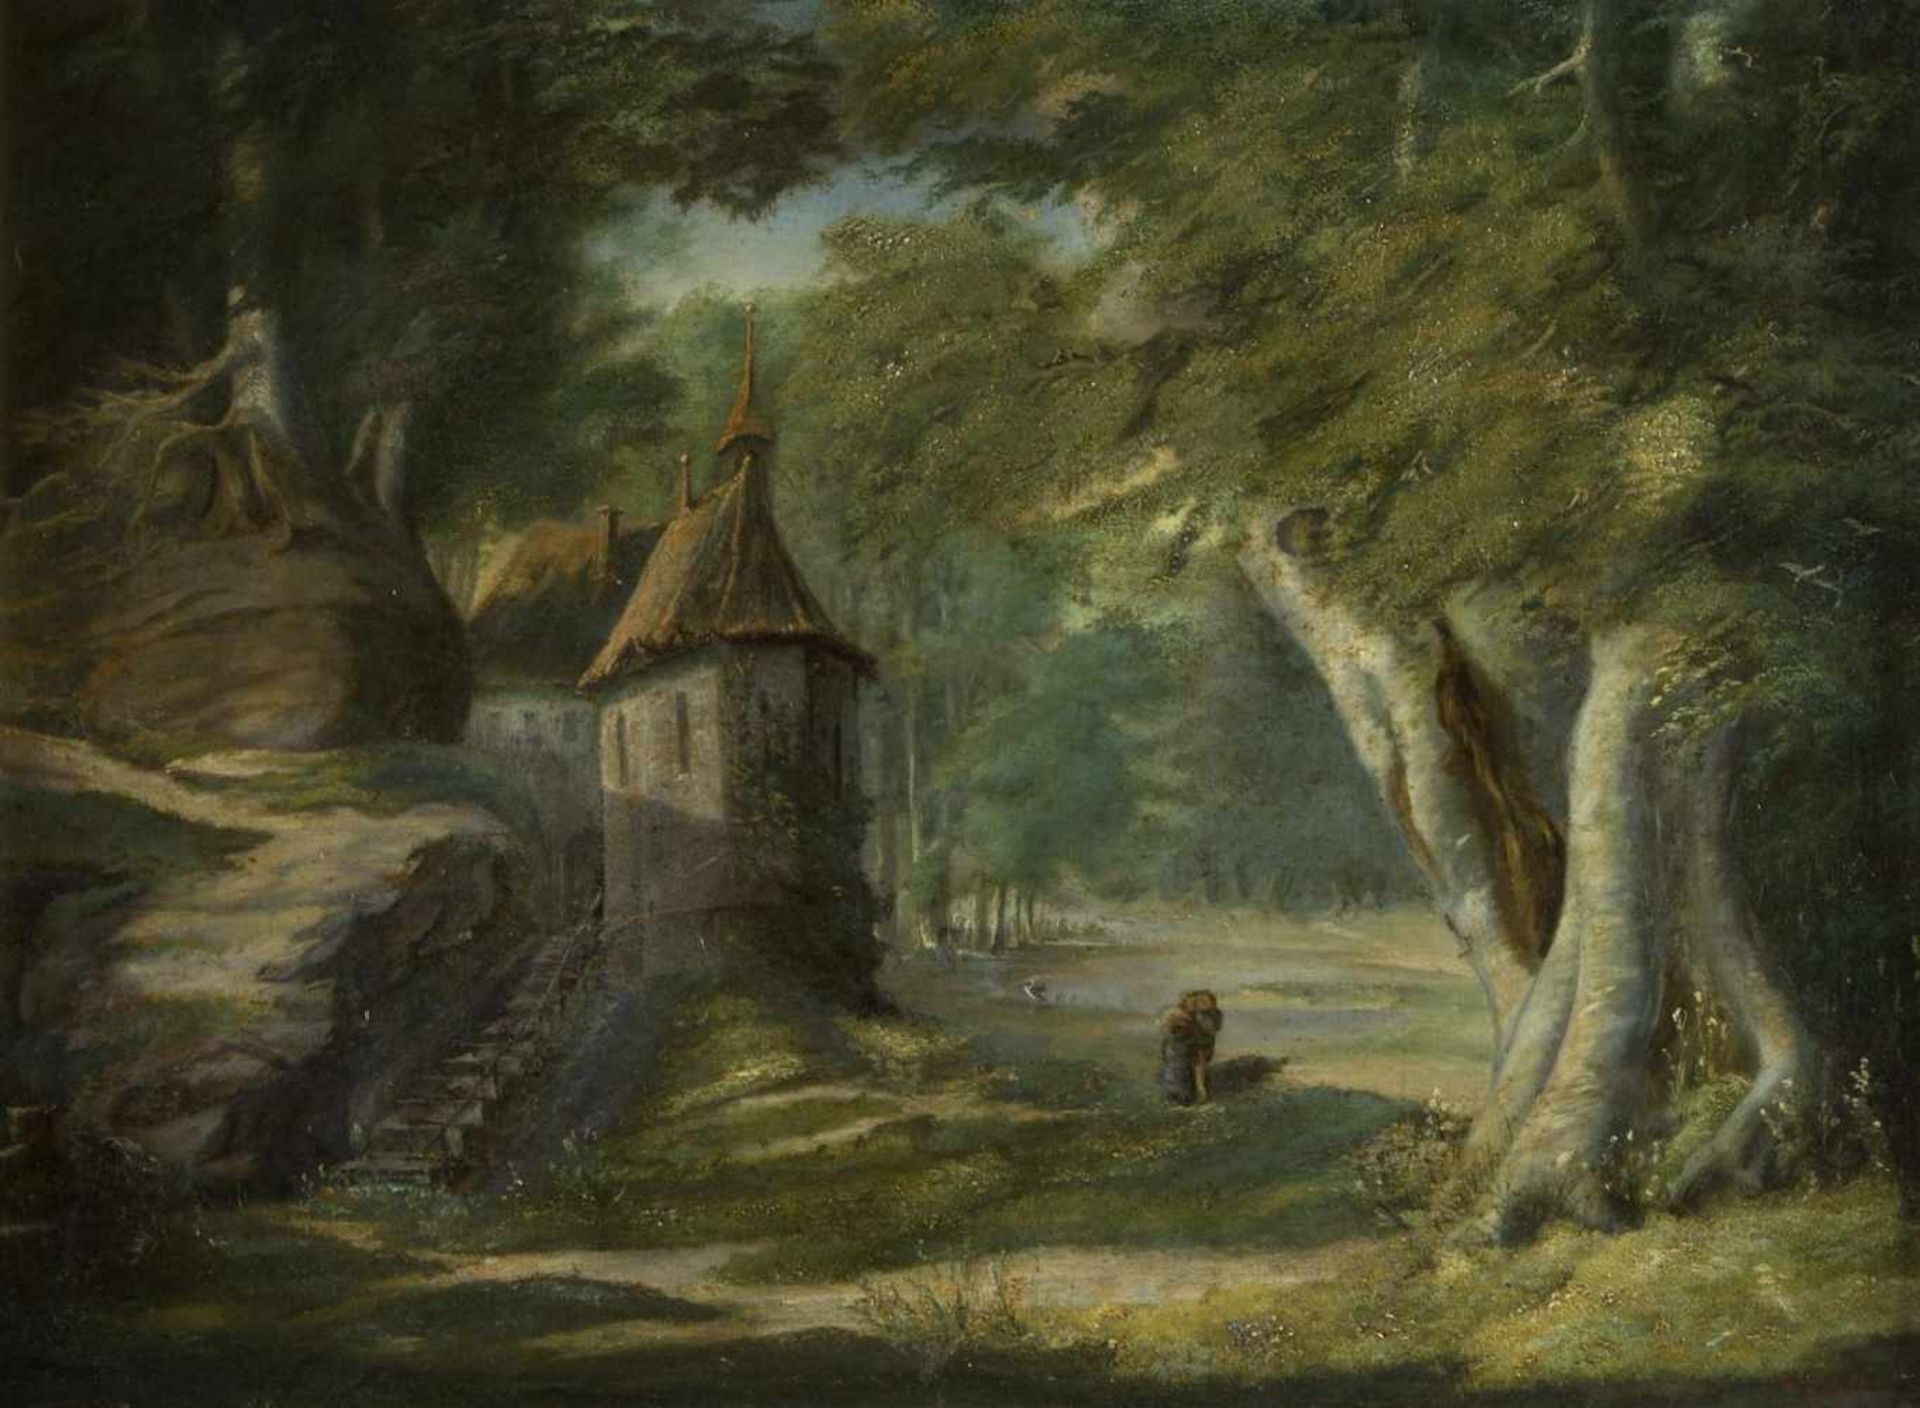 WaldenfelsEin Paar an einem kleinen Häuschen in einem Wald. Öl/Lwd. Sign. und dat. 1858. 56 x 75,5